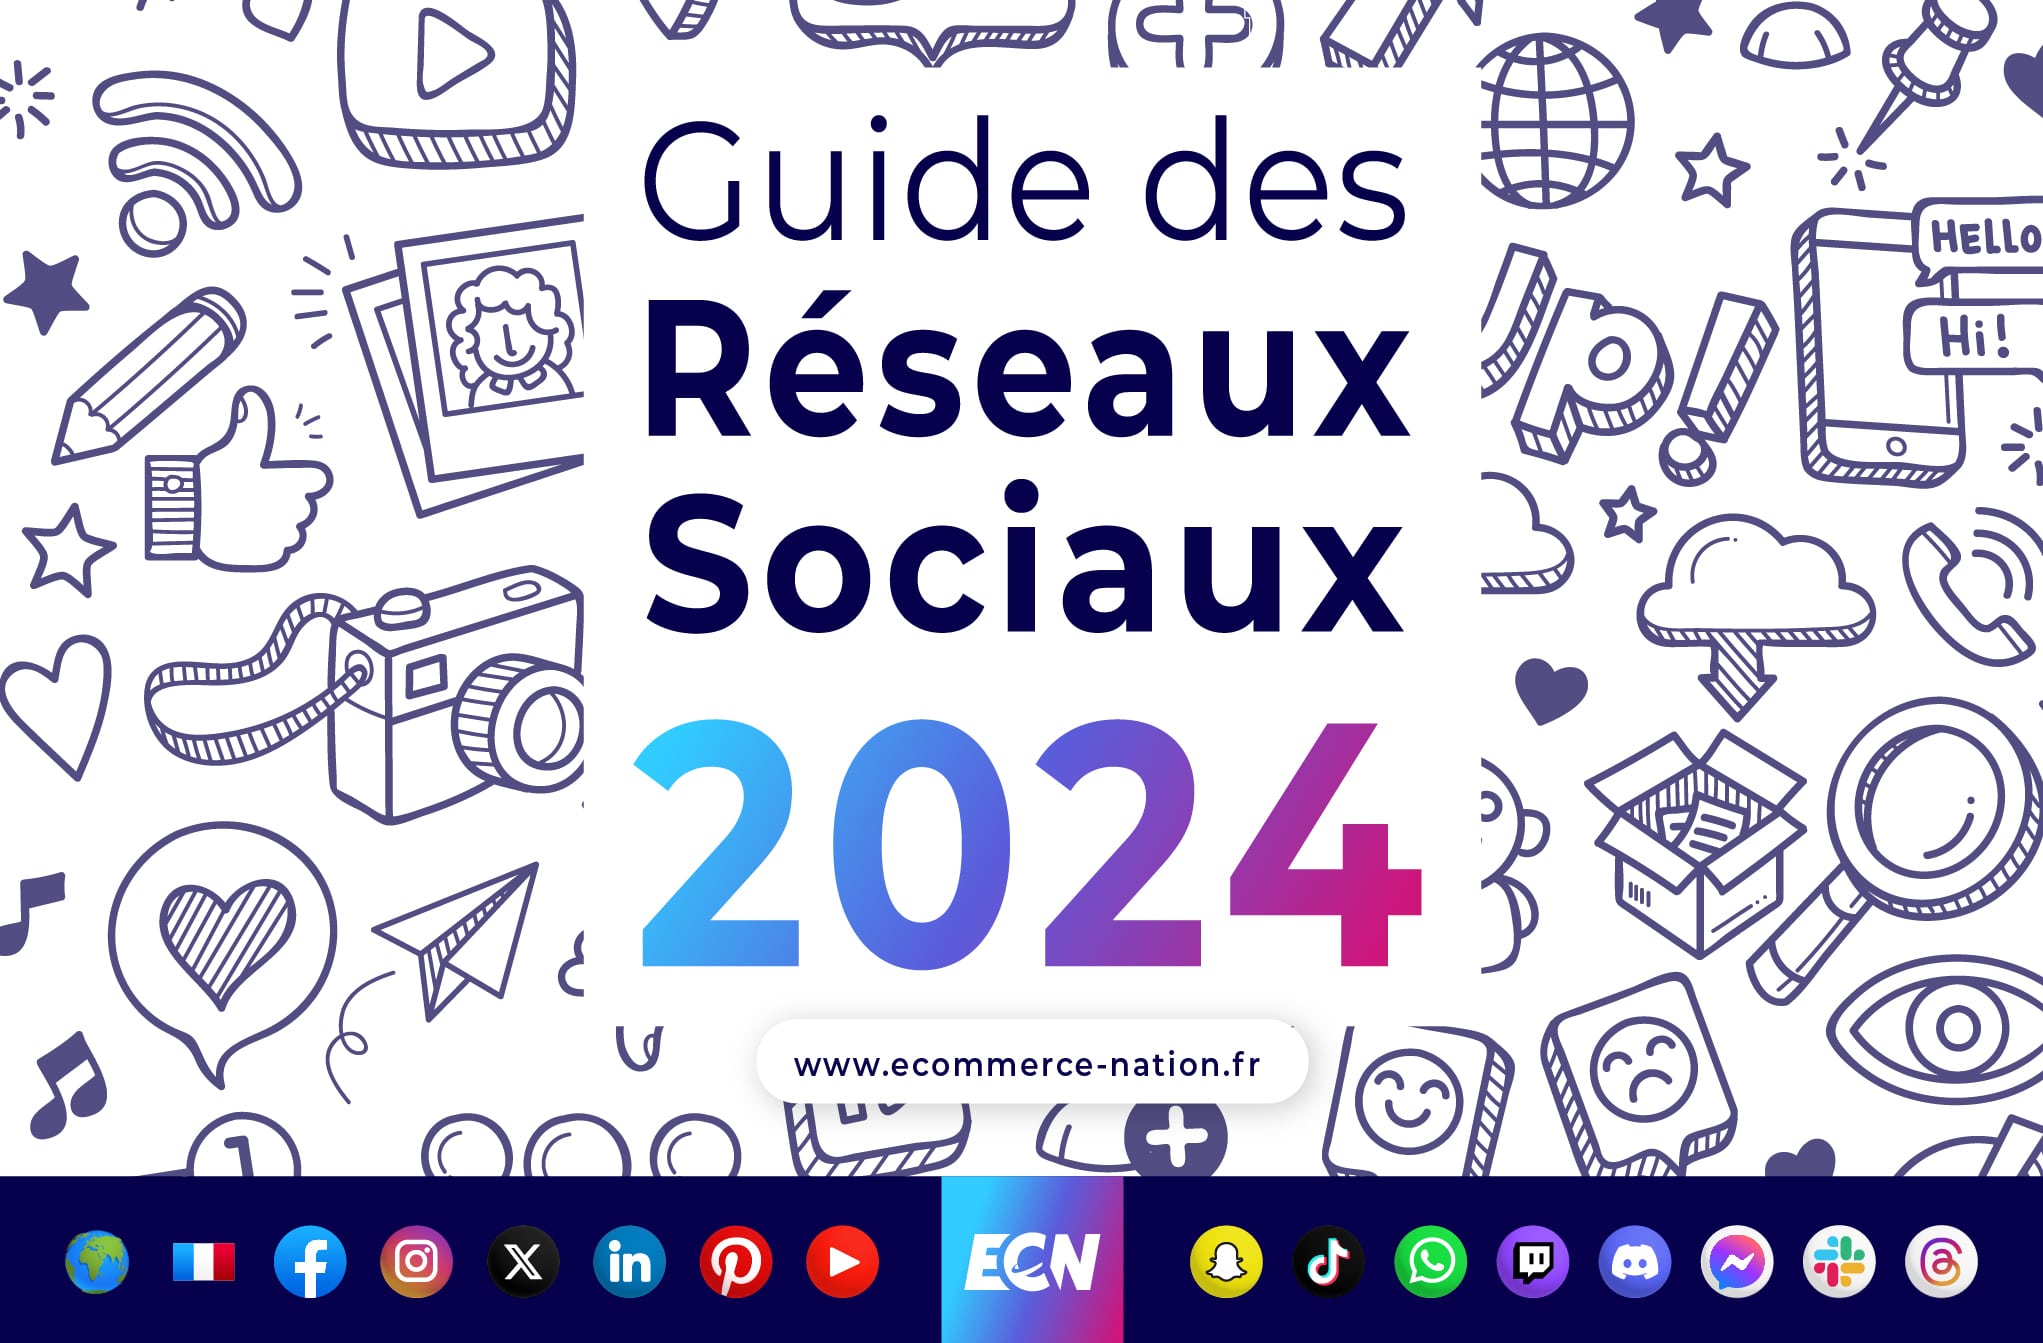 Guide des réseaux sociaux 2024 en France